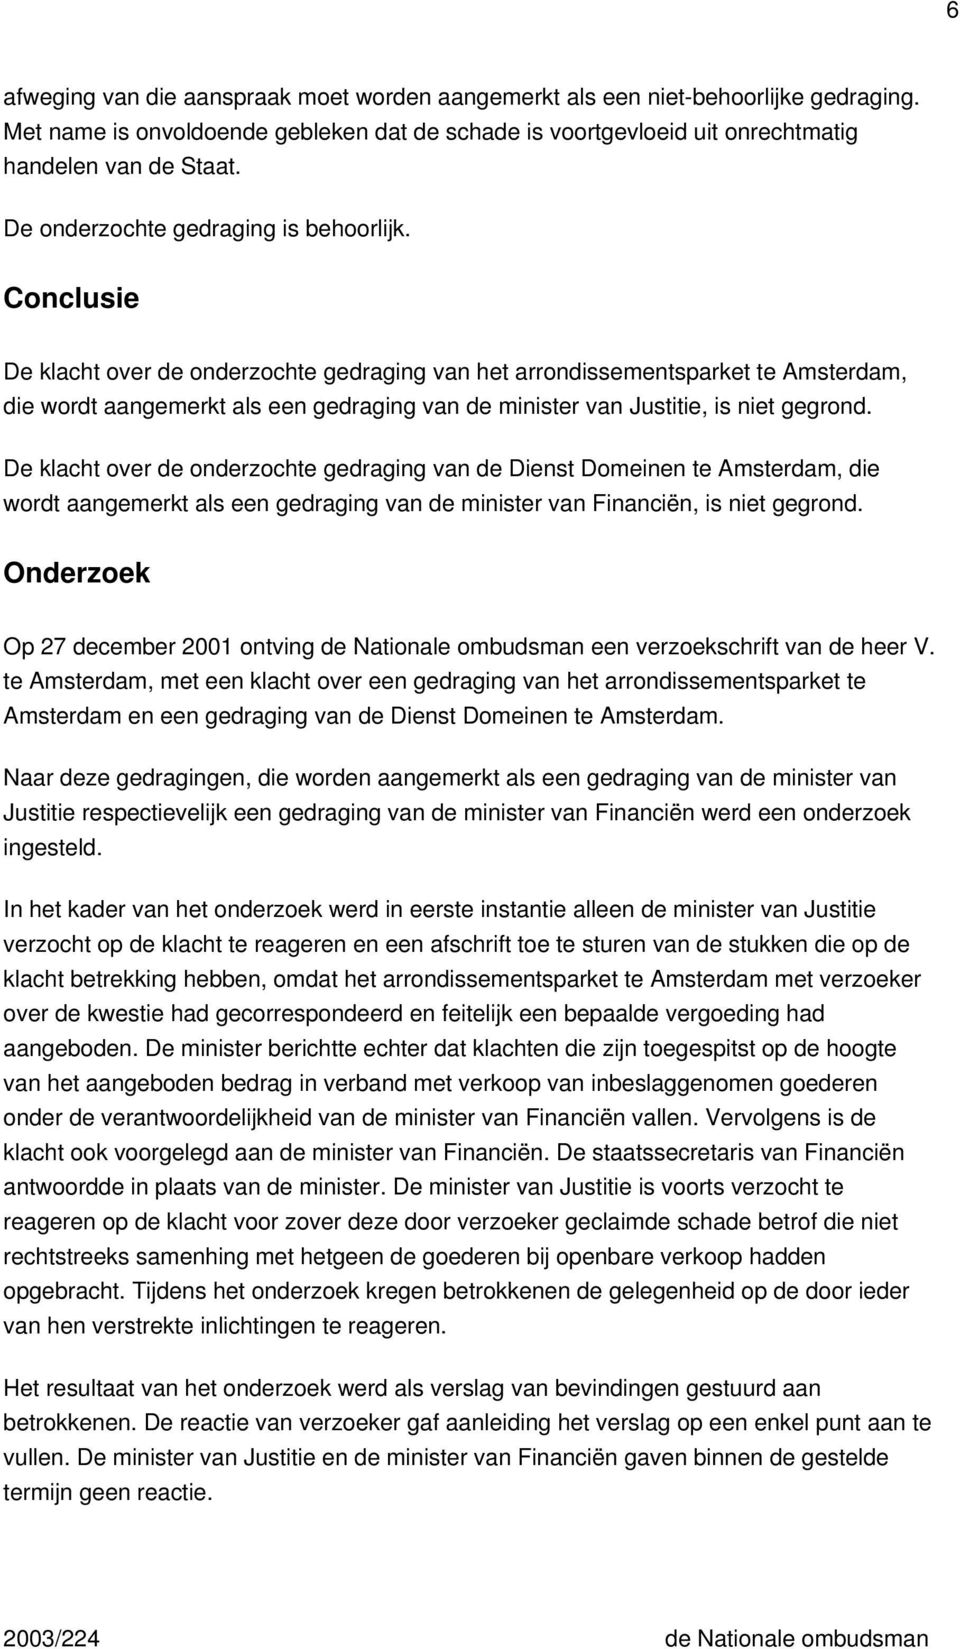 Conclusie De klacht over de onderzochte gedraging van het arrondissementsparket te Amsterdam, die wordt aangemerkt als een gedraging van de minister van Justitie, is niet gegrond.